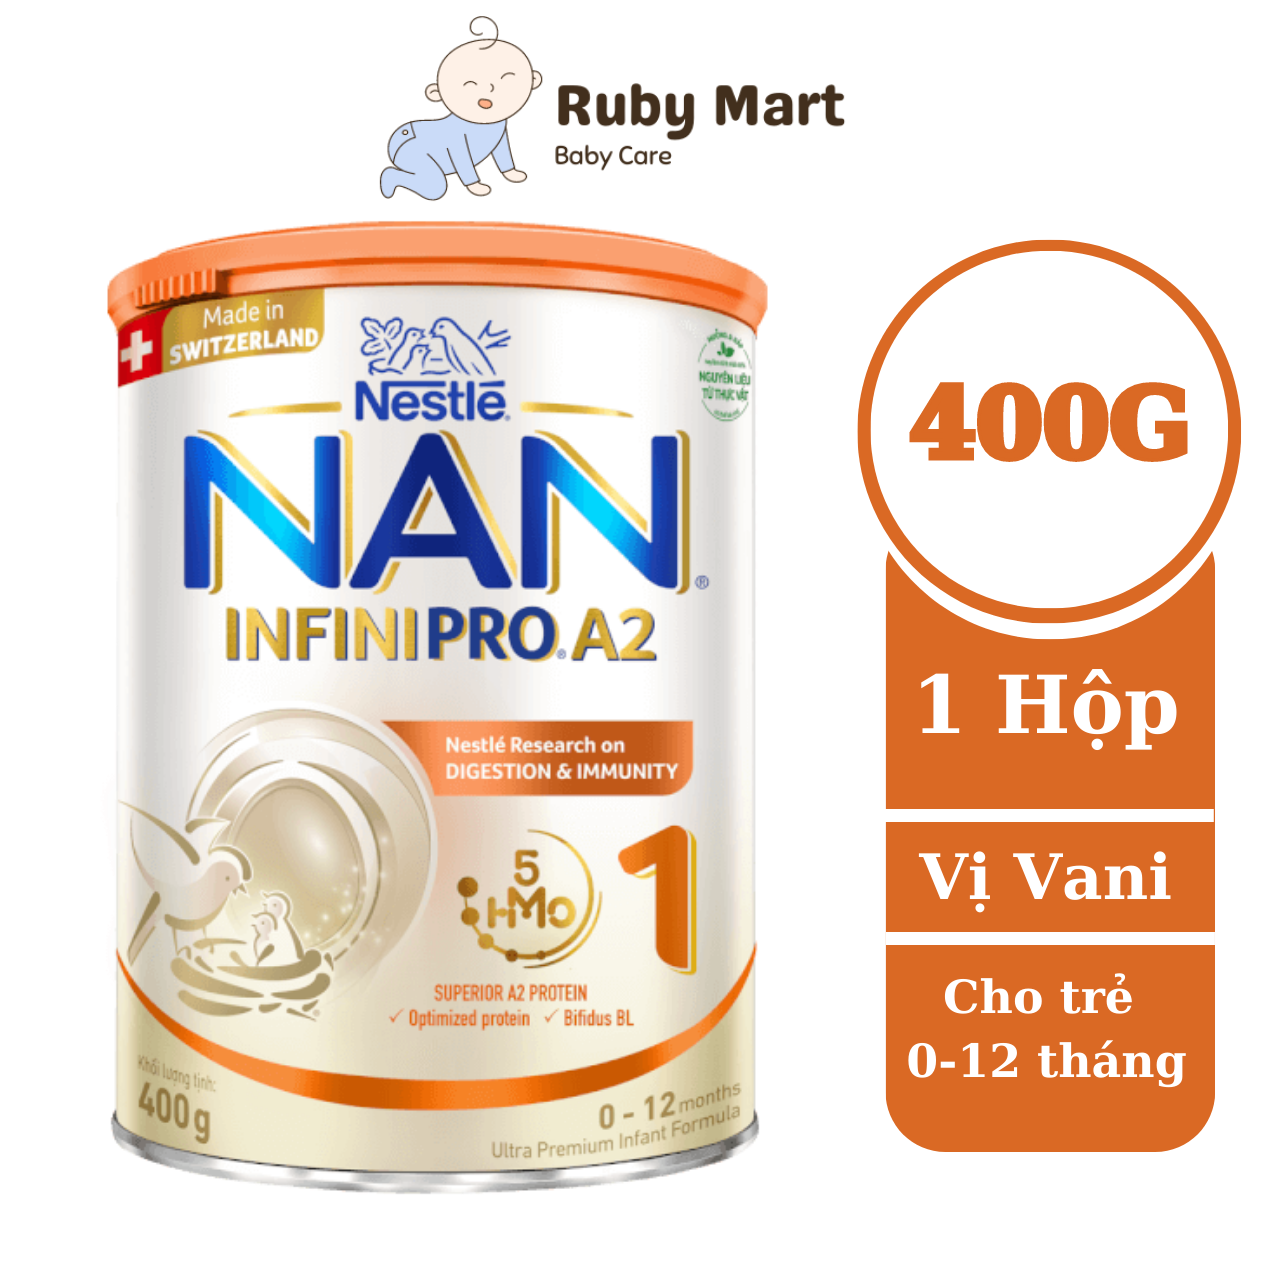 Date T5 25 Sữa Bột Nestlé NAN INFINIPRO A2 bước 1 400g nhập khẩu nguyên